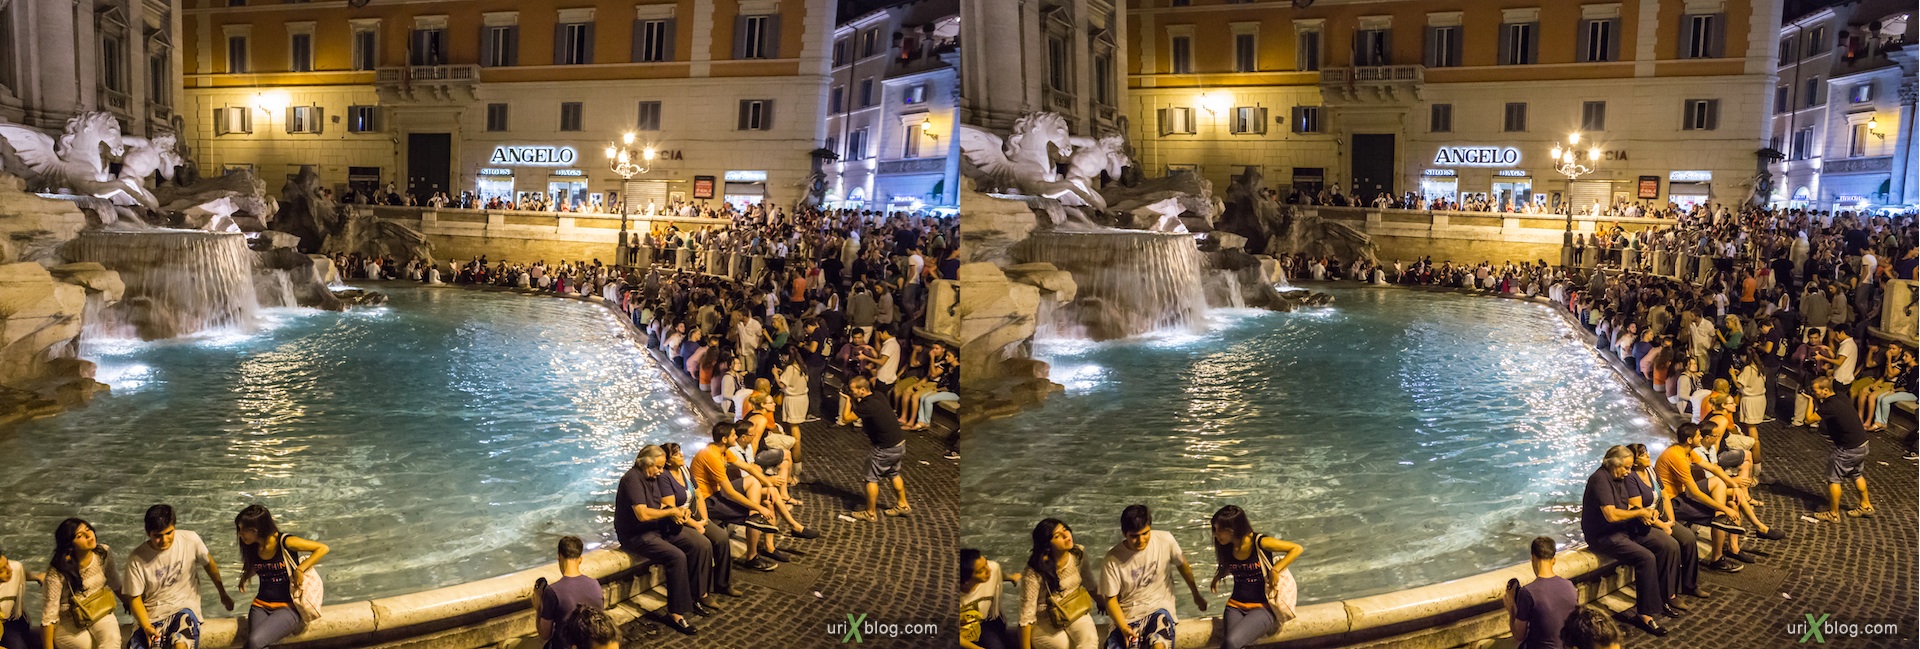 2012, фонтан Треви, Рим, Италия, 3D, перекрёстные стереопары, стерео, стереопара, стереопары